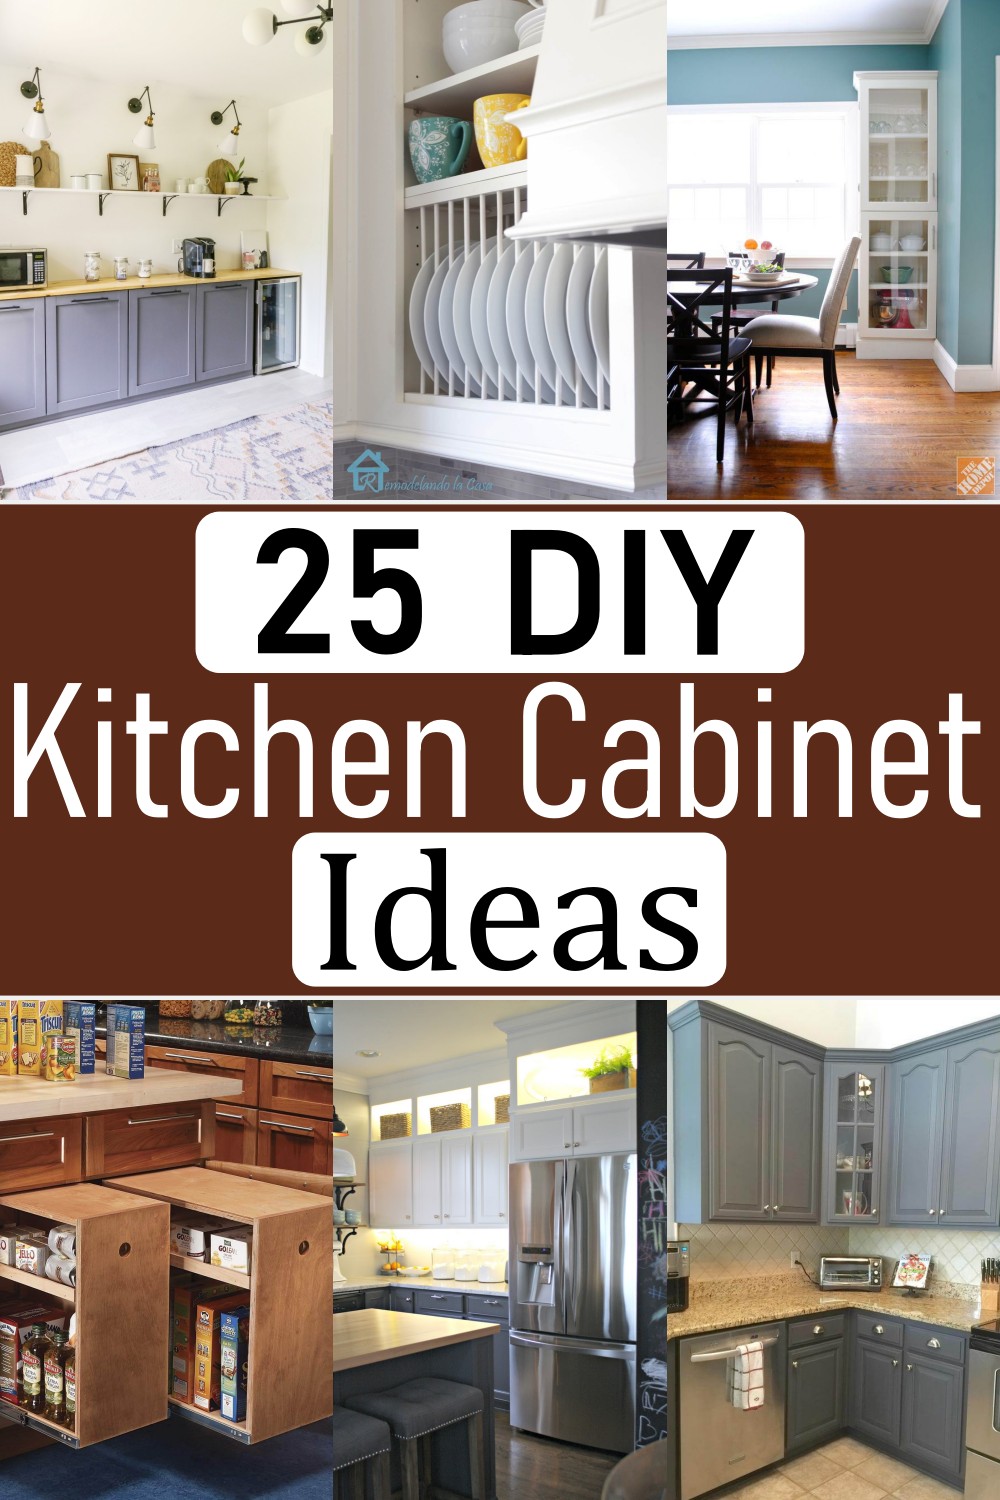 25 DIY Kitchen Cabinet Ideas - Craftsy